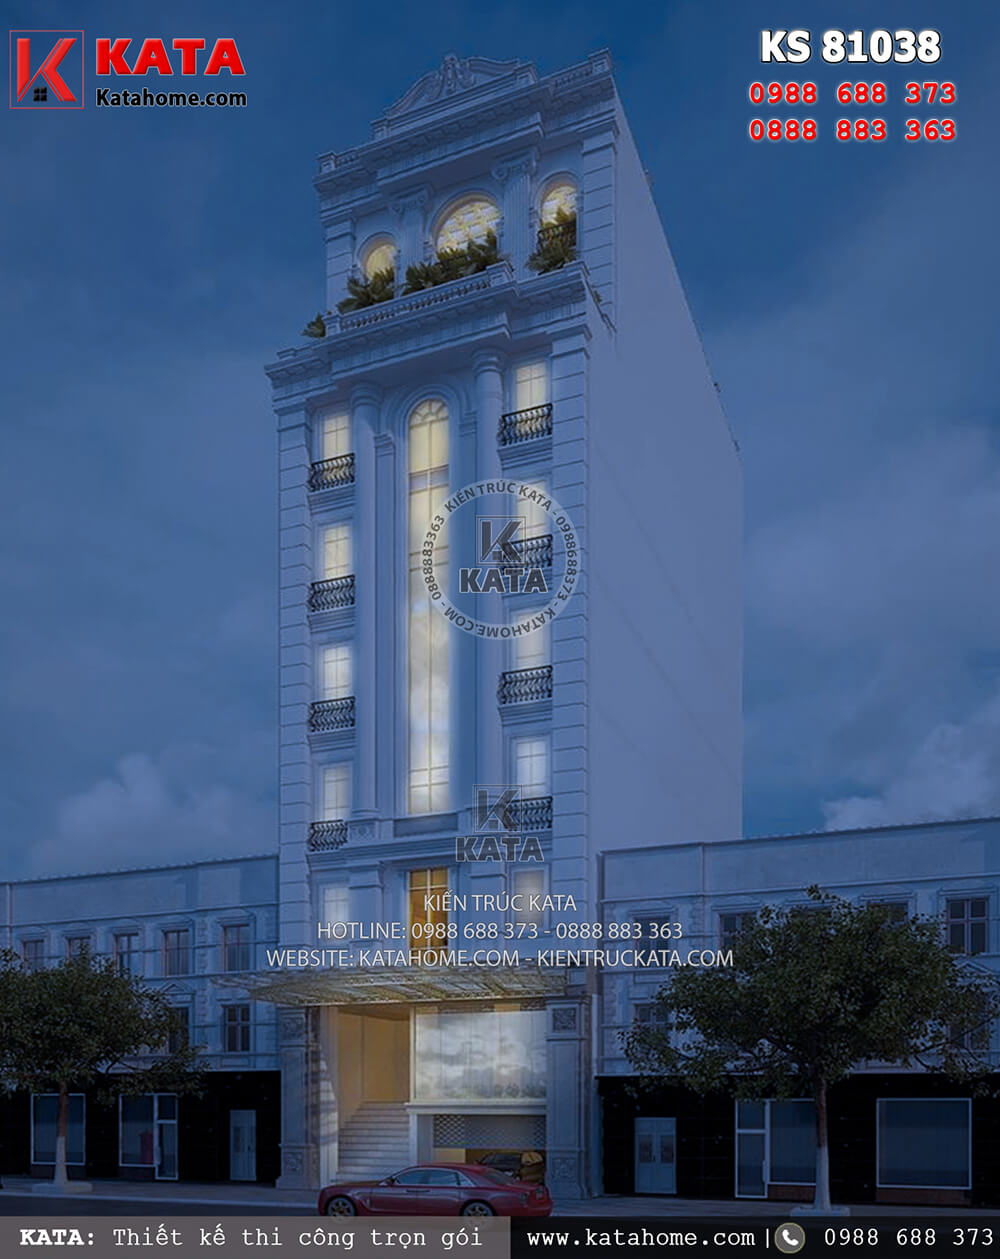 Một góc nhìn của mẫu khách sạn 3 sao đẹp 7 tầng tại Quảng Ninh